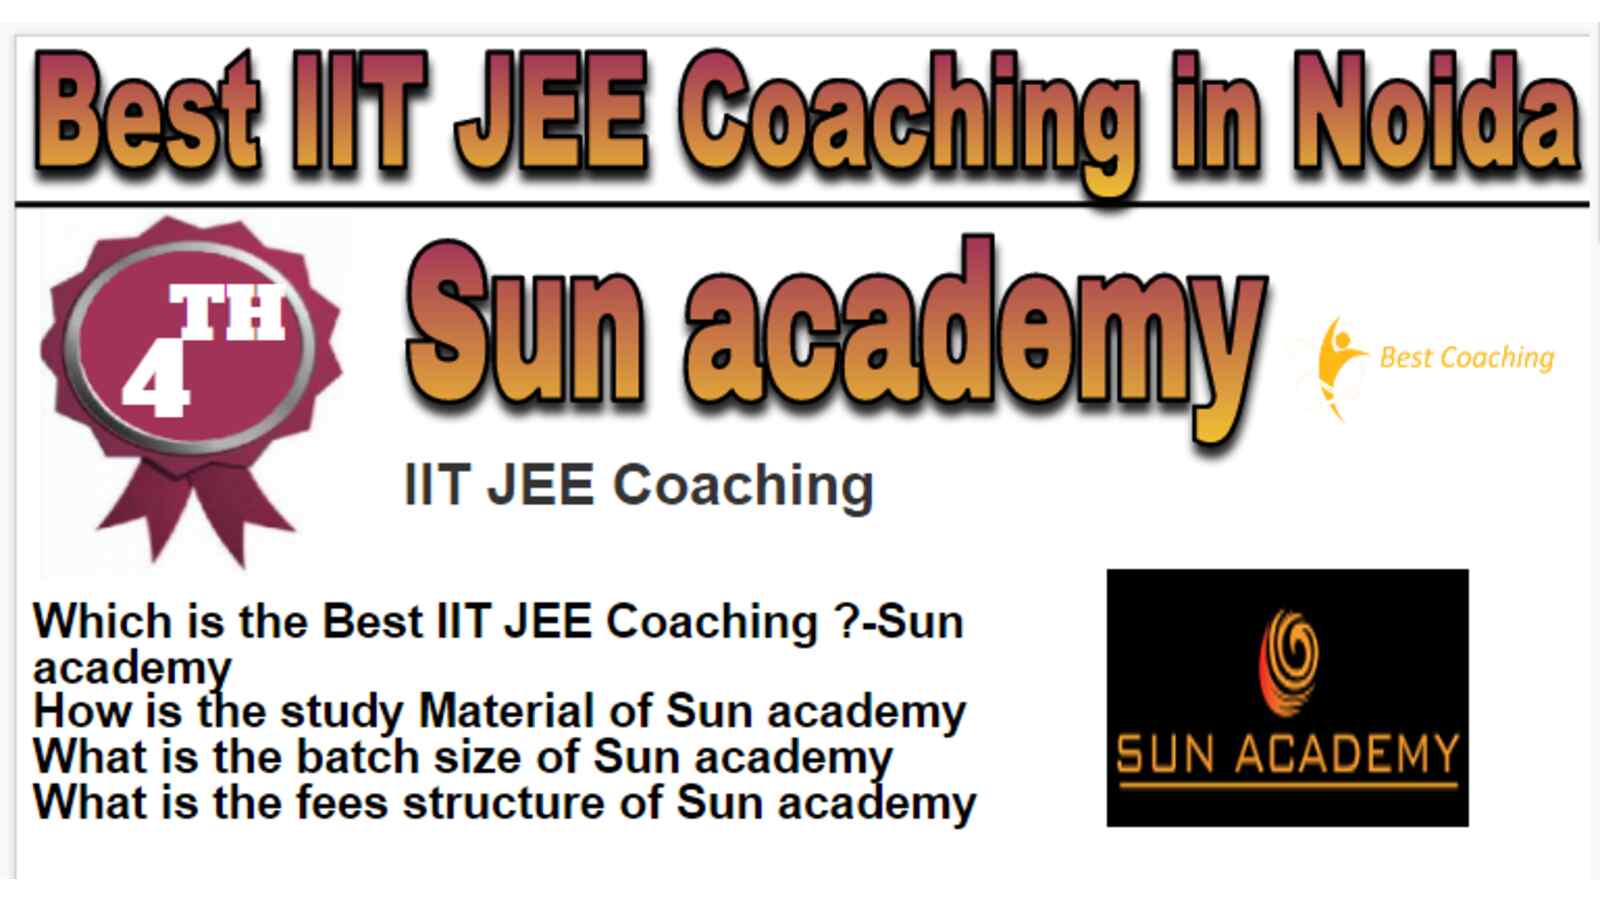 Rank 4 Best IIT JEE Coaching in Noida